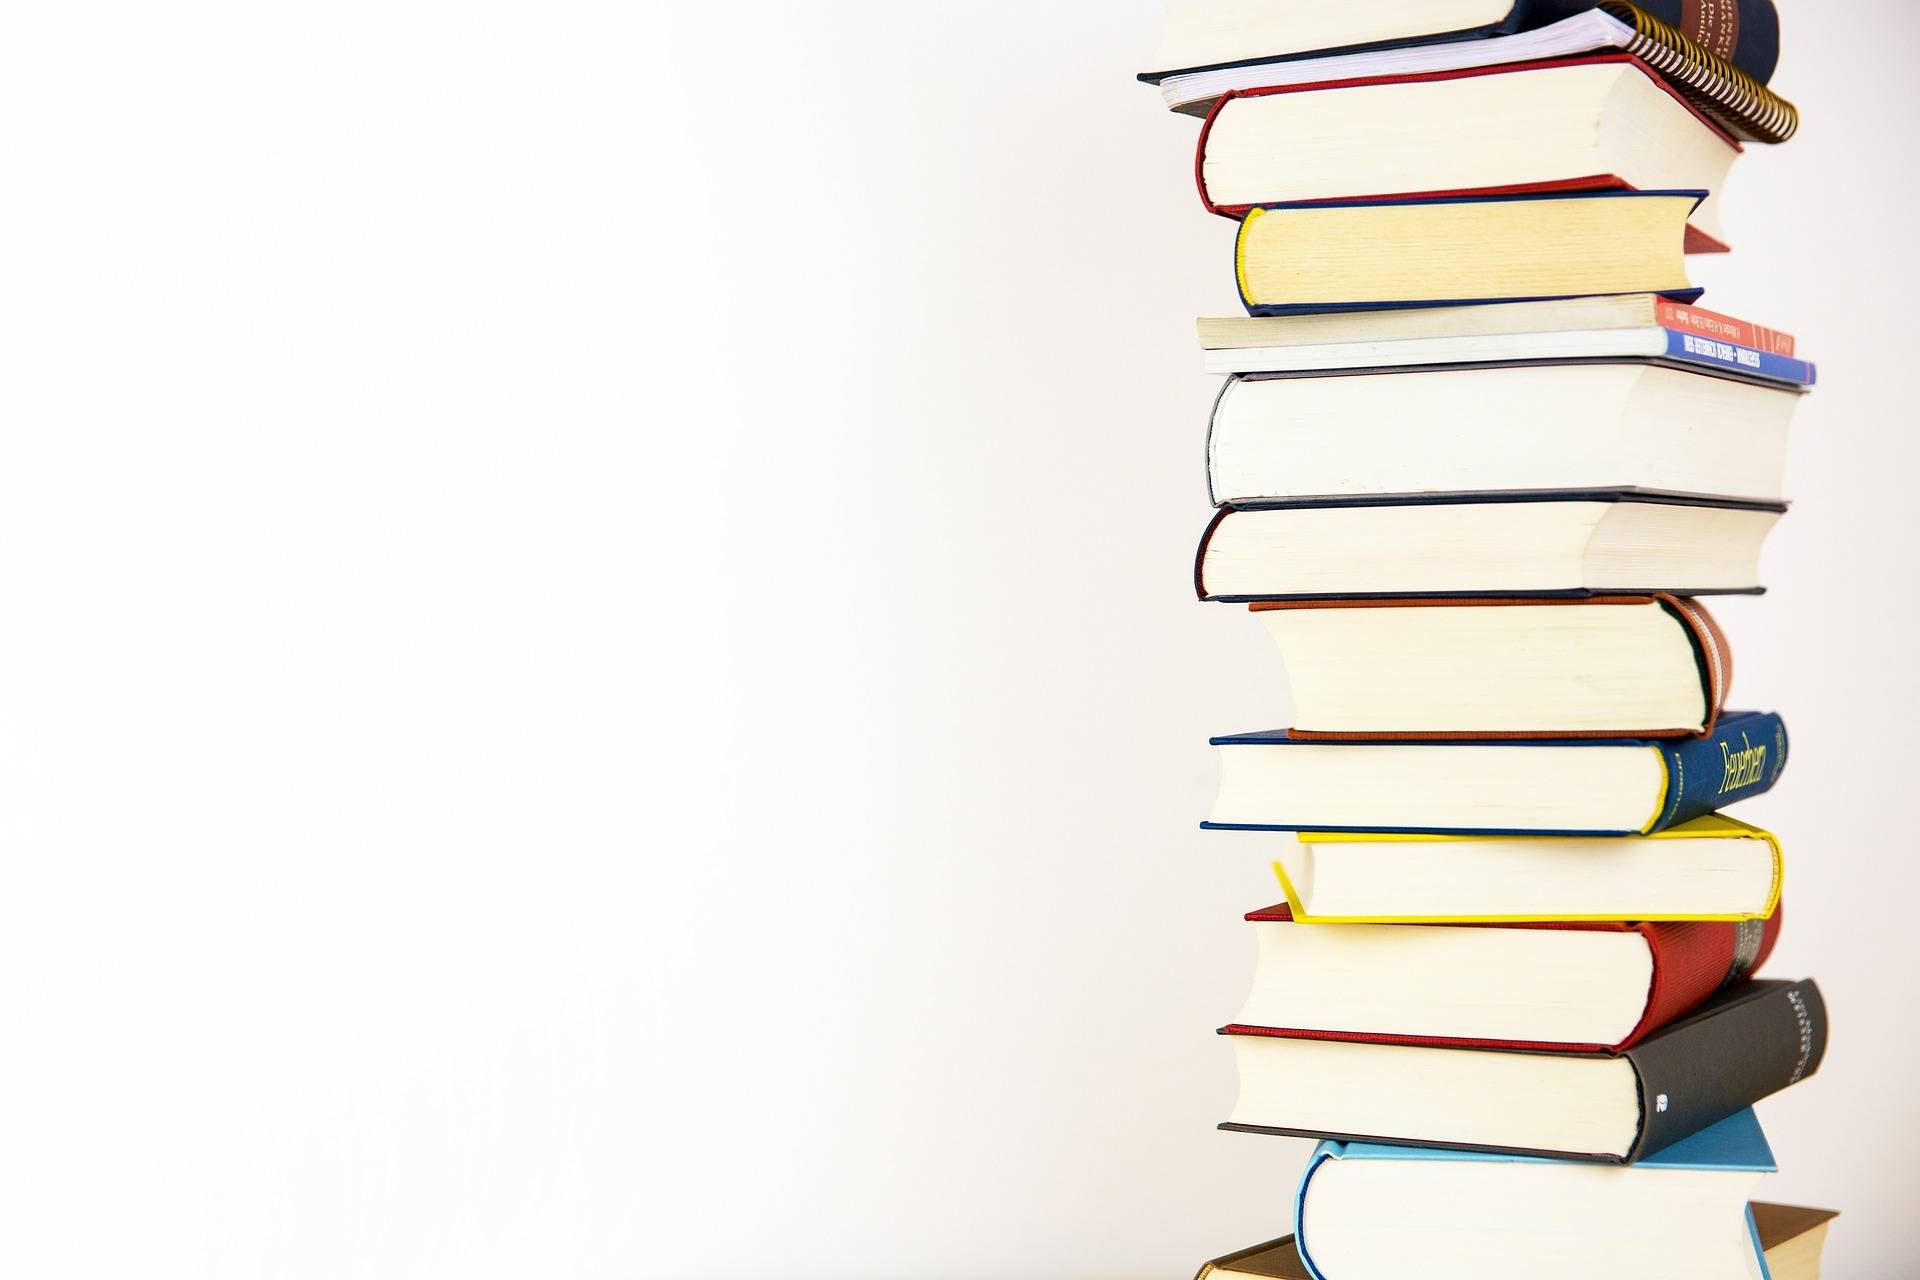  Förderverein der Stadtbücherei organisiert drei Krimi-Lesungen: Nervenkitzel im Lesecafé